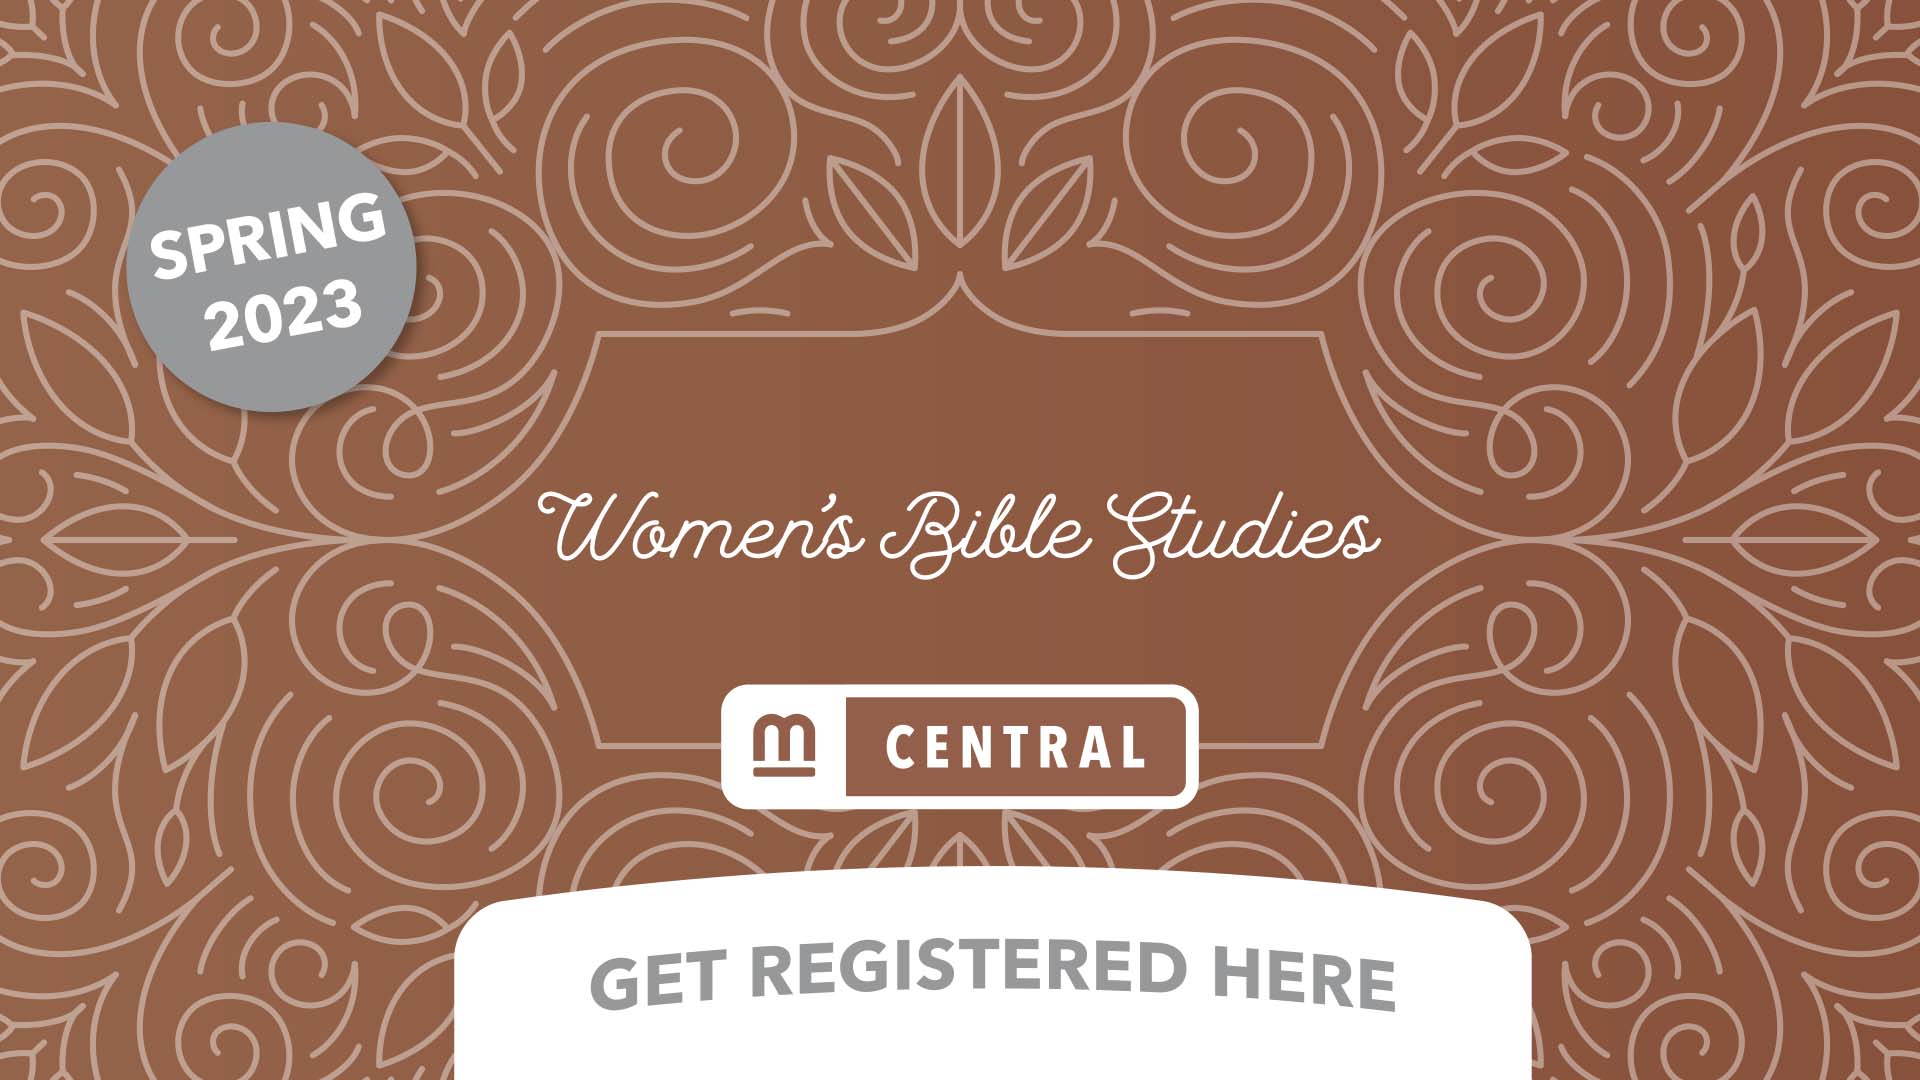 Mission City Women's Bible Studies Central Campus